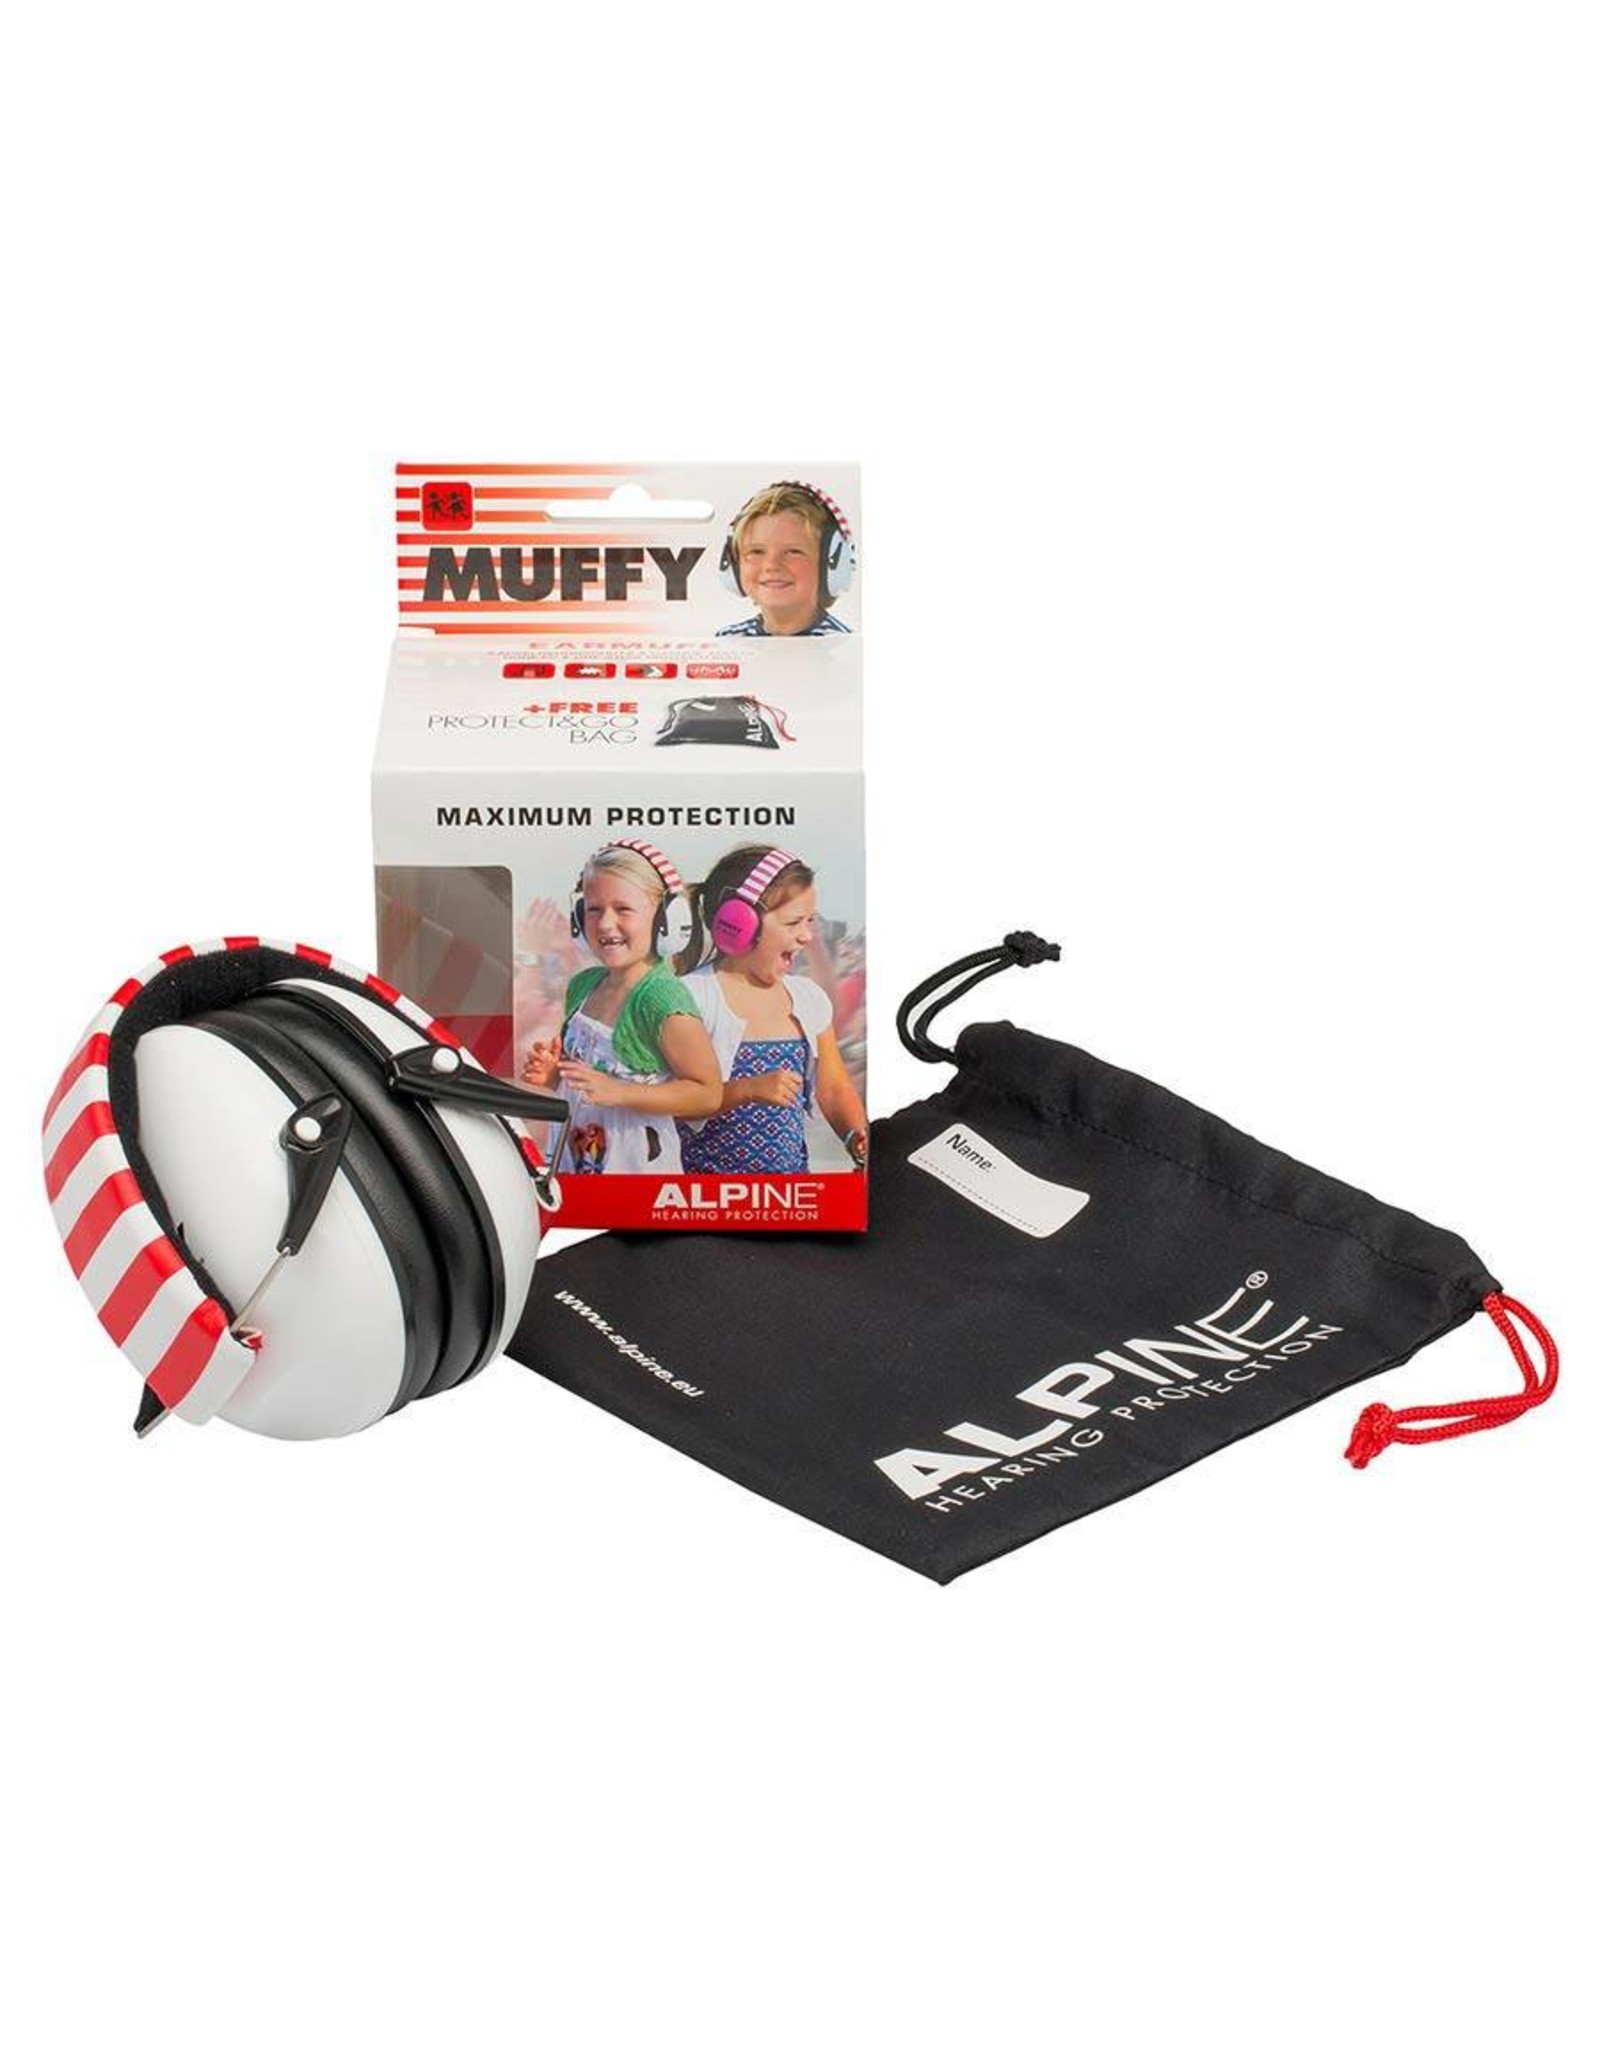 Alpine Muffy Kids weiß kapselgehorschutz